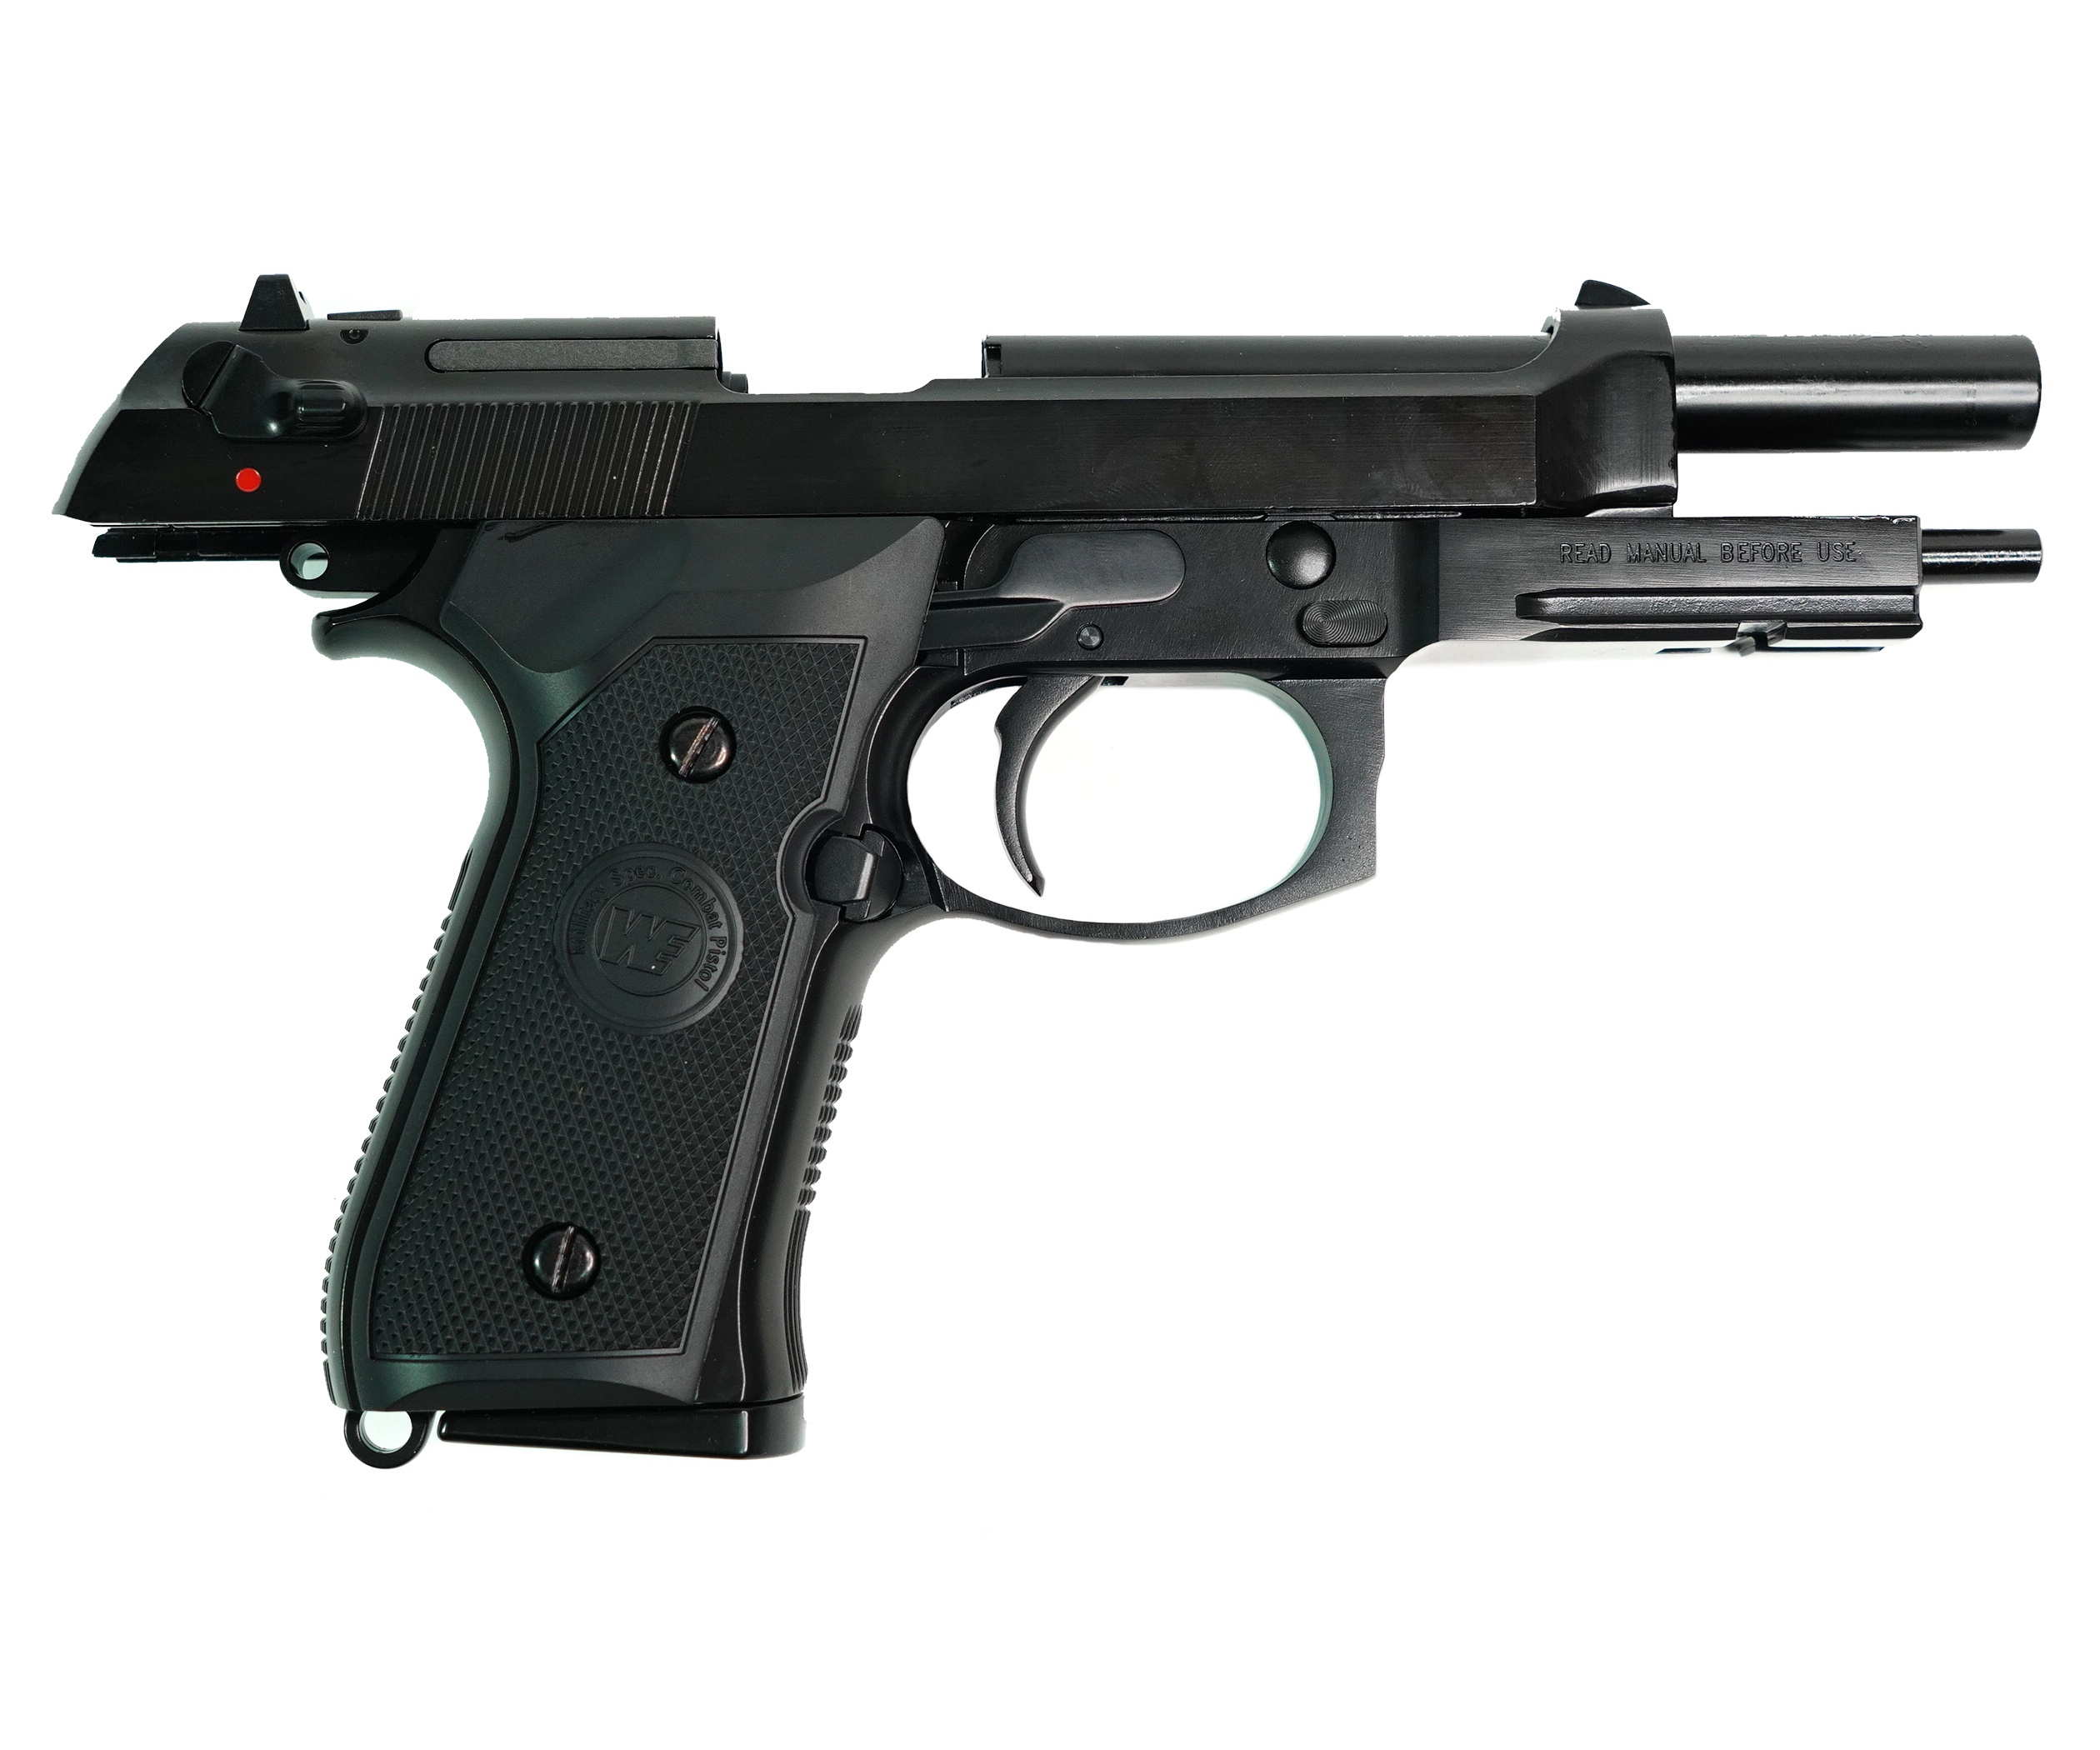 Страйкбольный пистолет (WE) BERETTA M9A1 new, черный, металл, рельса, WE-M012-BOX-BK